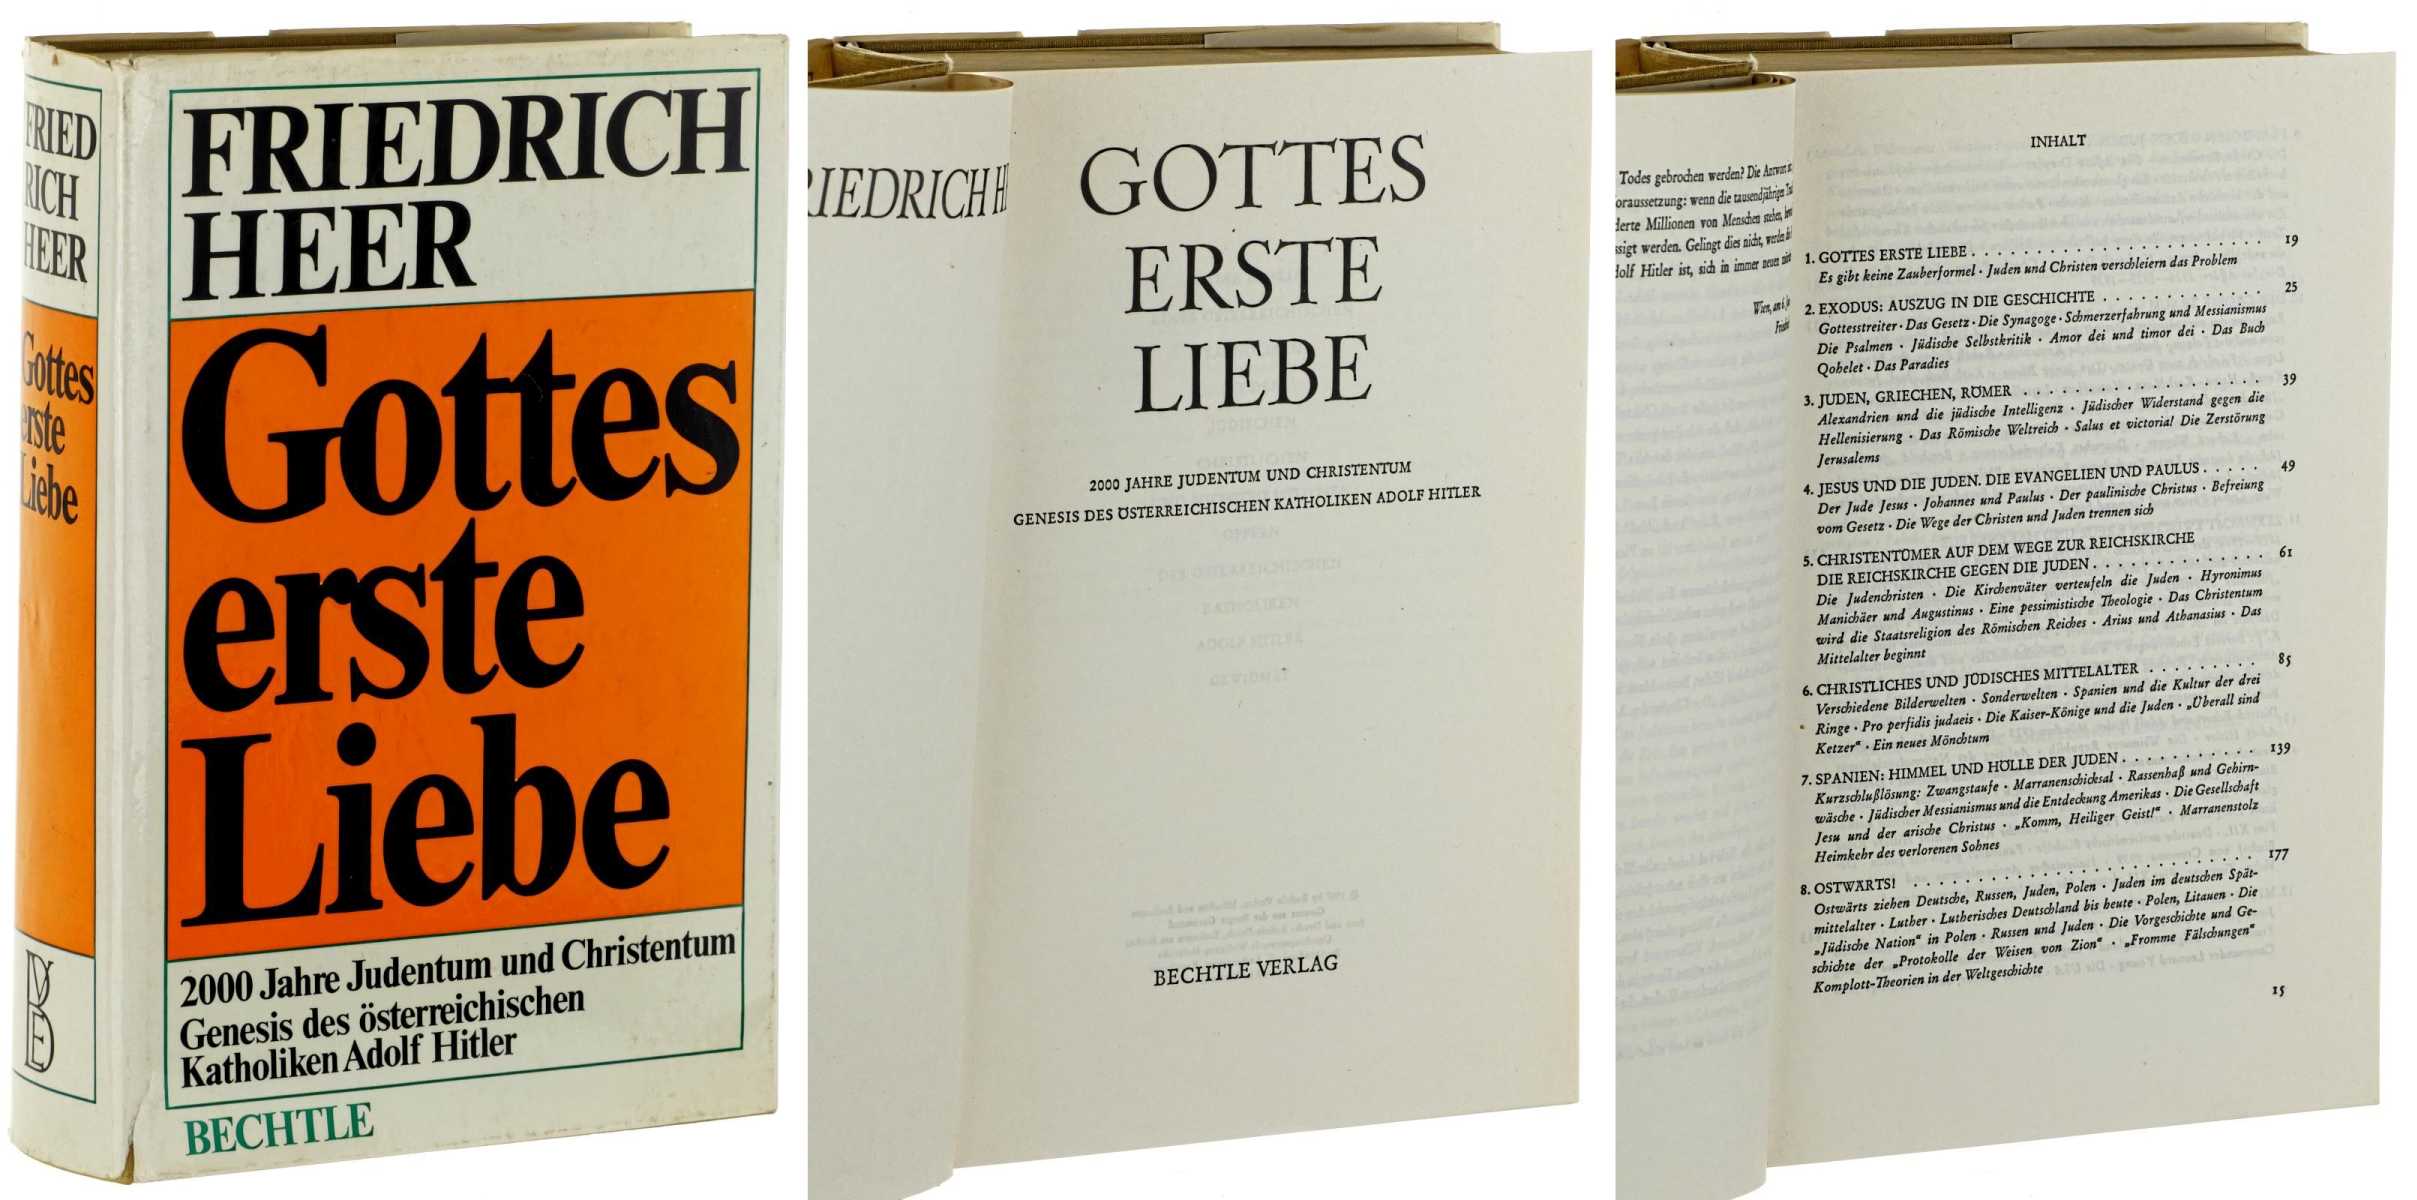 Heer, Friedrich:  Gottes erste Liebe. 2000 Jahre Judentum und Christentum. Genesis des österreichischen Katholiken Adolf Hitler. 